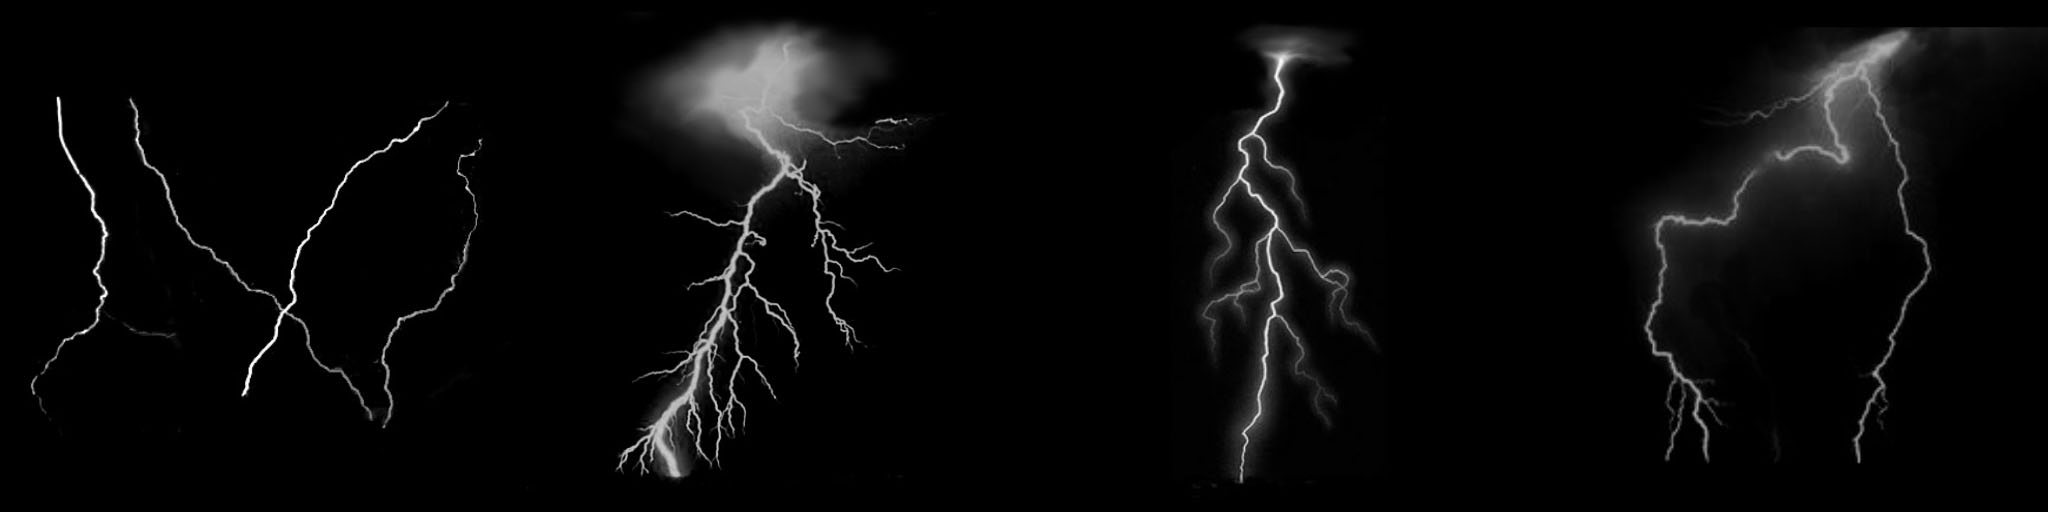 SS-lightning.jpg